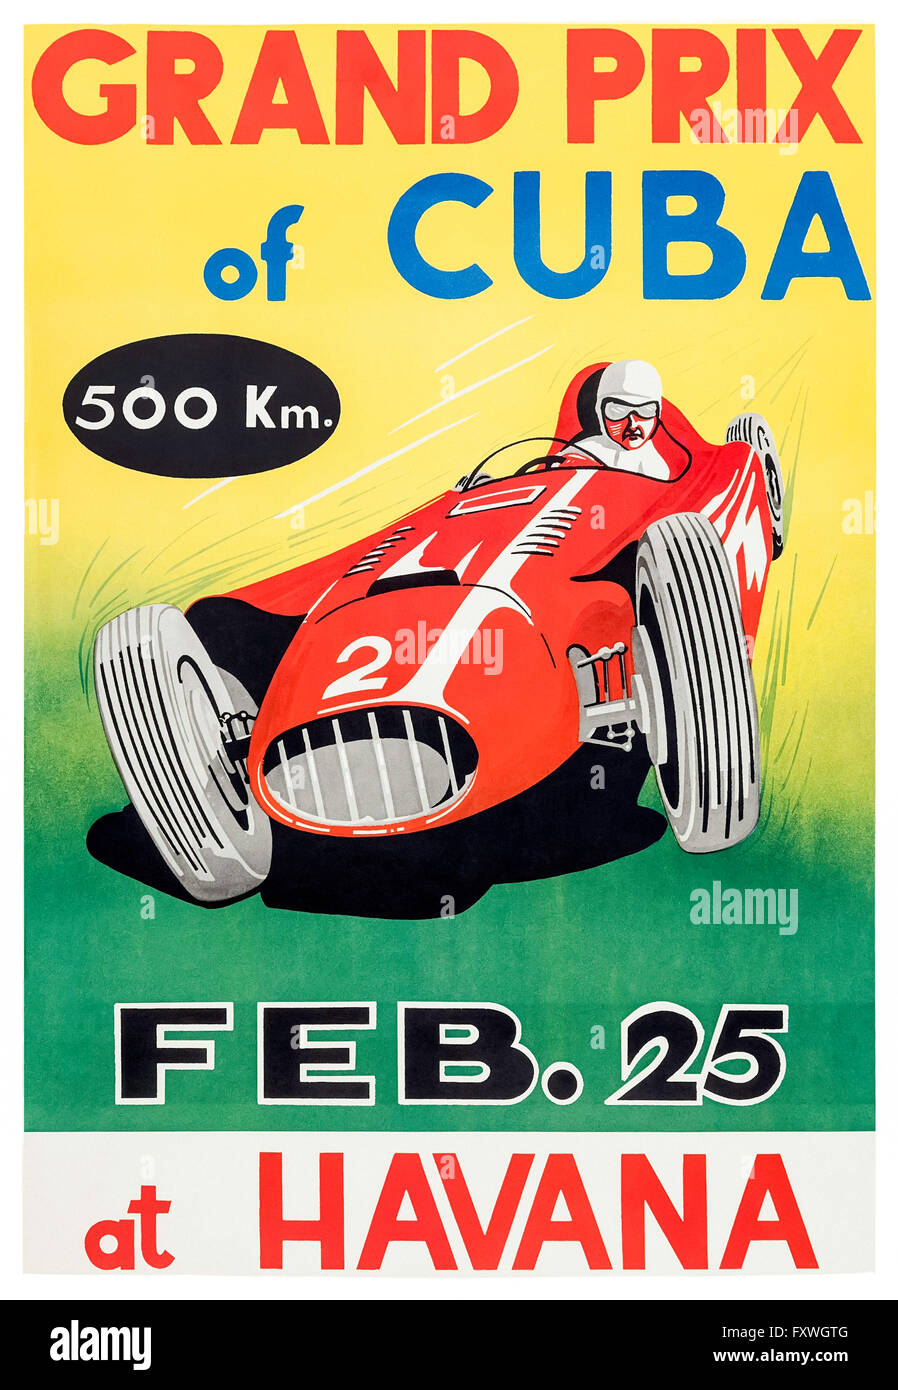 Grand Prix de Cuba' 25 février 1958 affiche présentant Juan Manuel Fangio qui a été kidnappé par des partisans de Fidel Castro à la veille de la course et libéré après sa finition. Voir la description pour plus d'informations. Banque D'Images